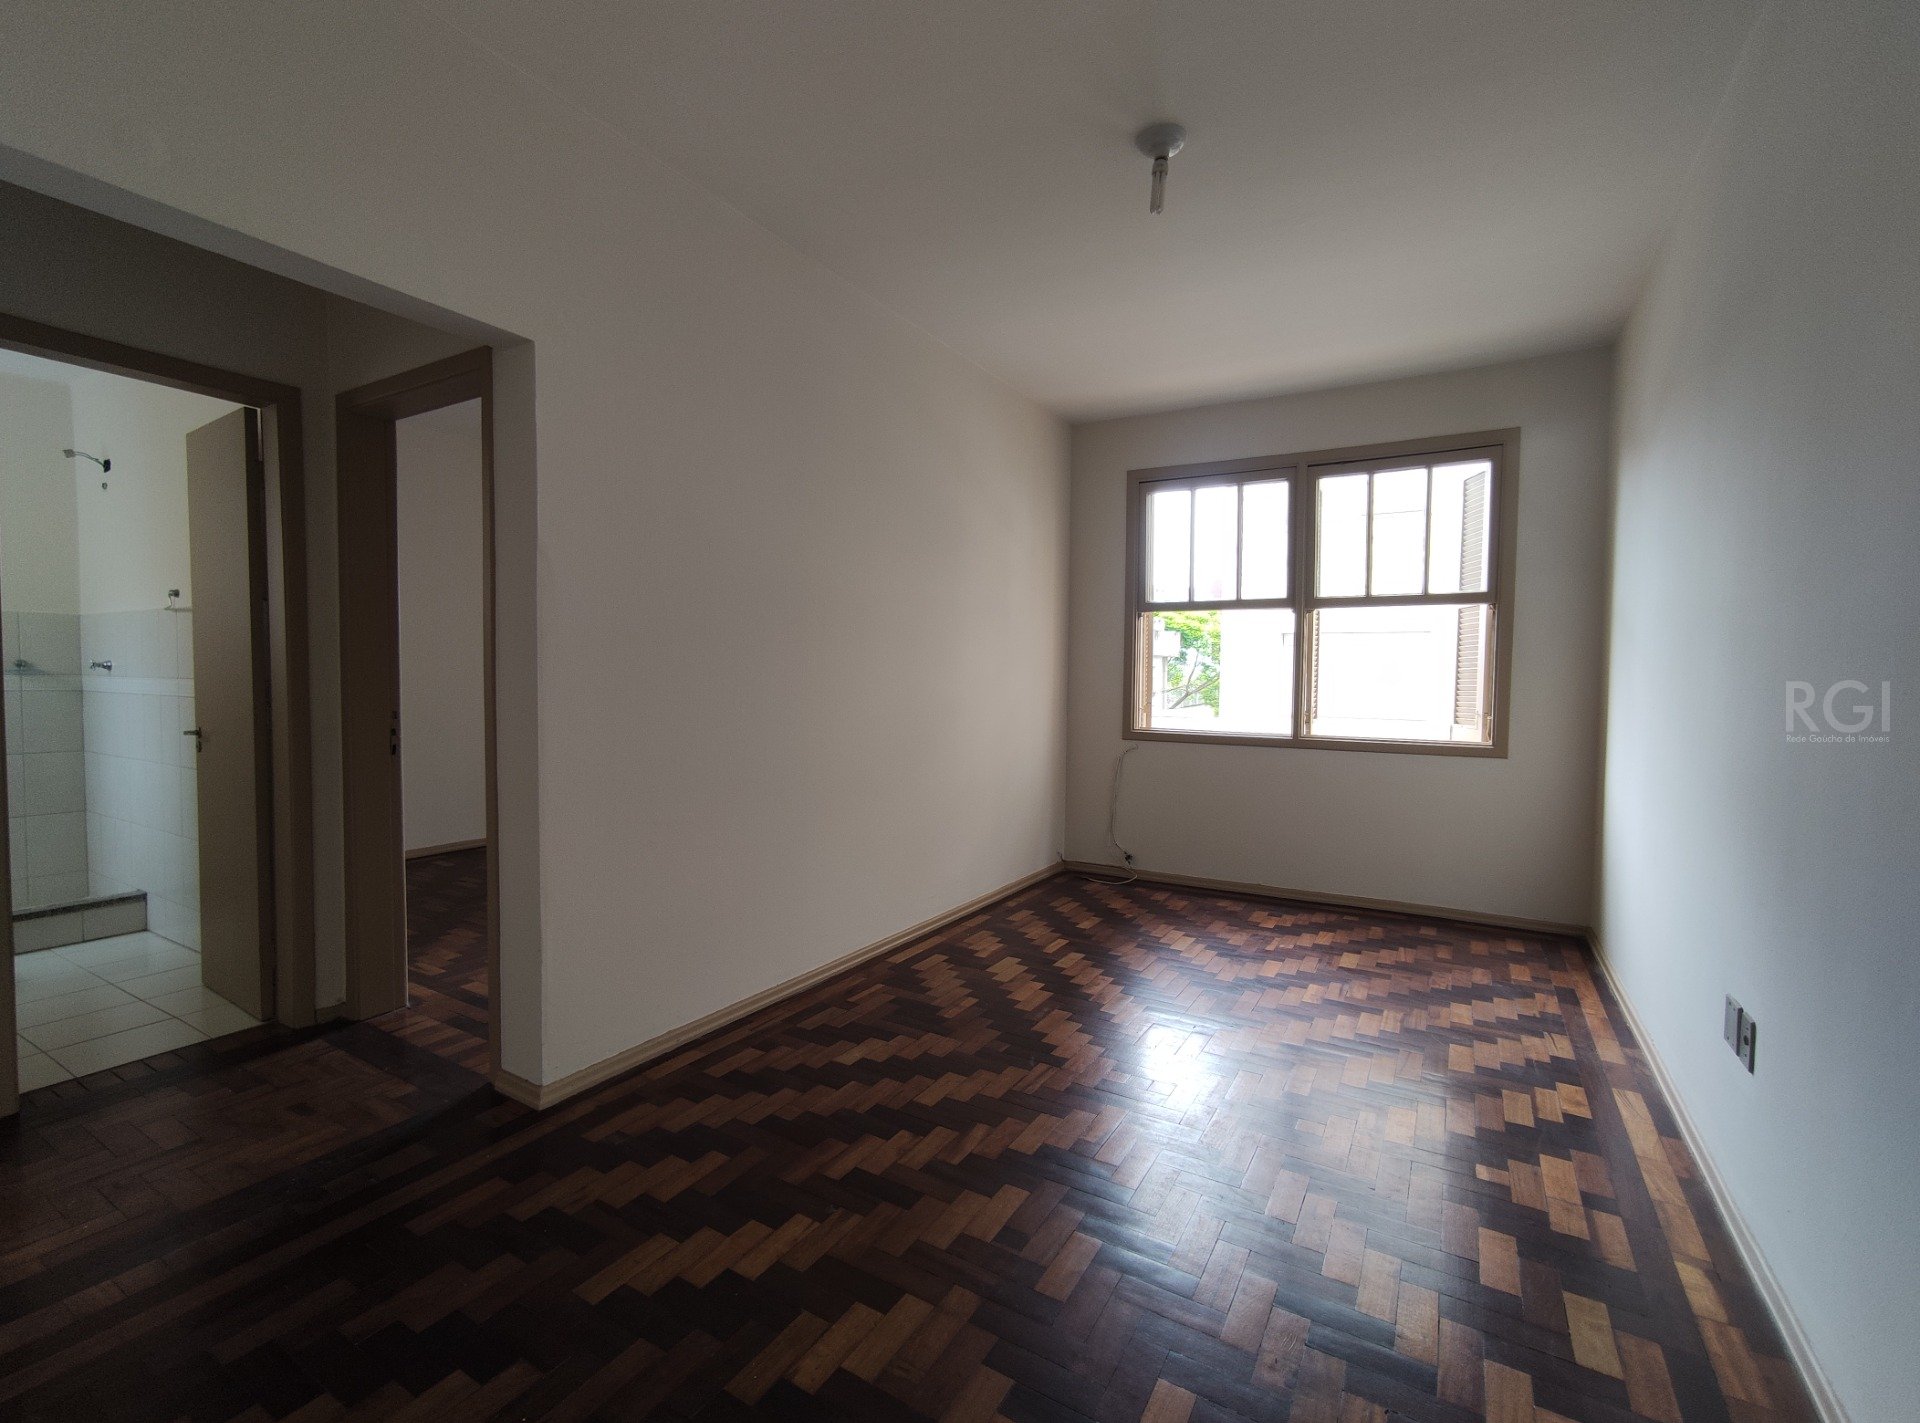 Apartamento com 45m², 1 dormitório no bairro Menino Deus em Porto Alegre para Comprar